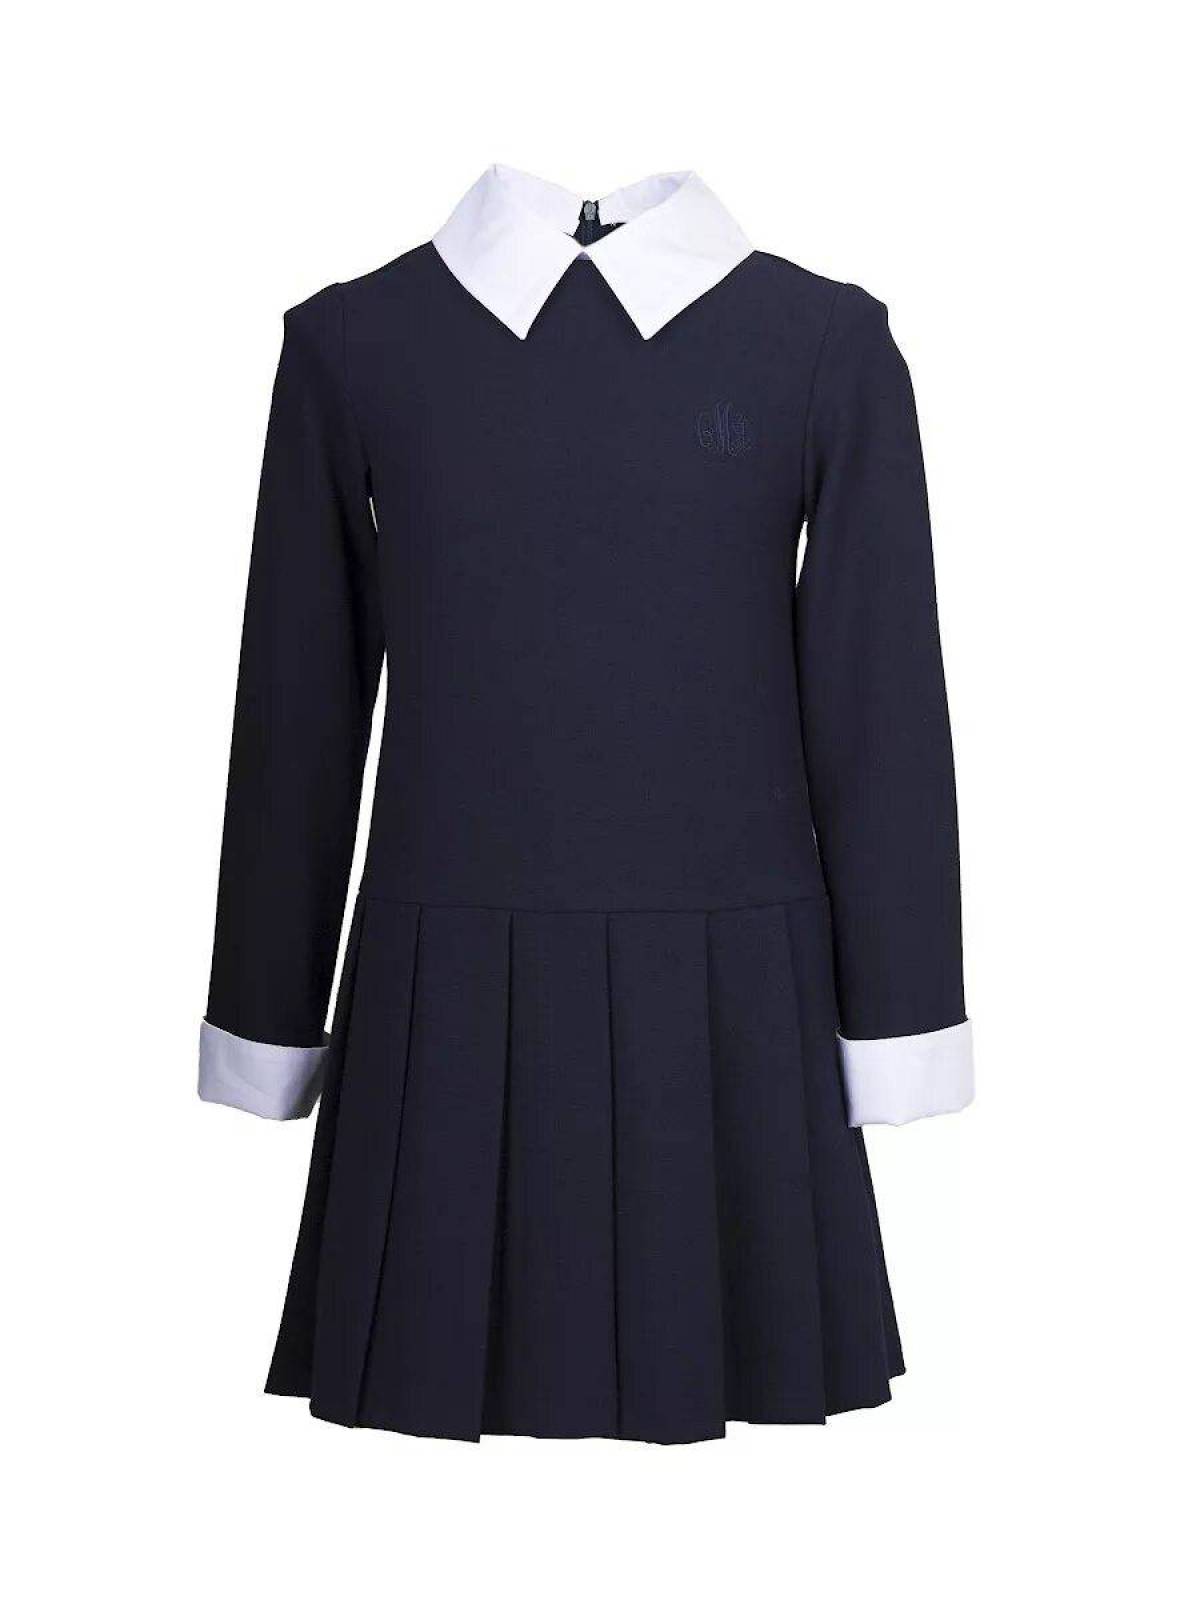 Школьные формы модели. Платье школьное. Школьная форма для девокс. Детская Школьная форма. Школьное платье для девочки.